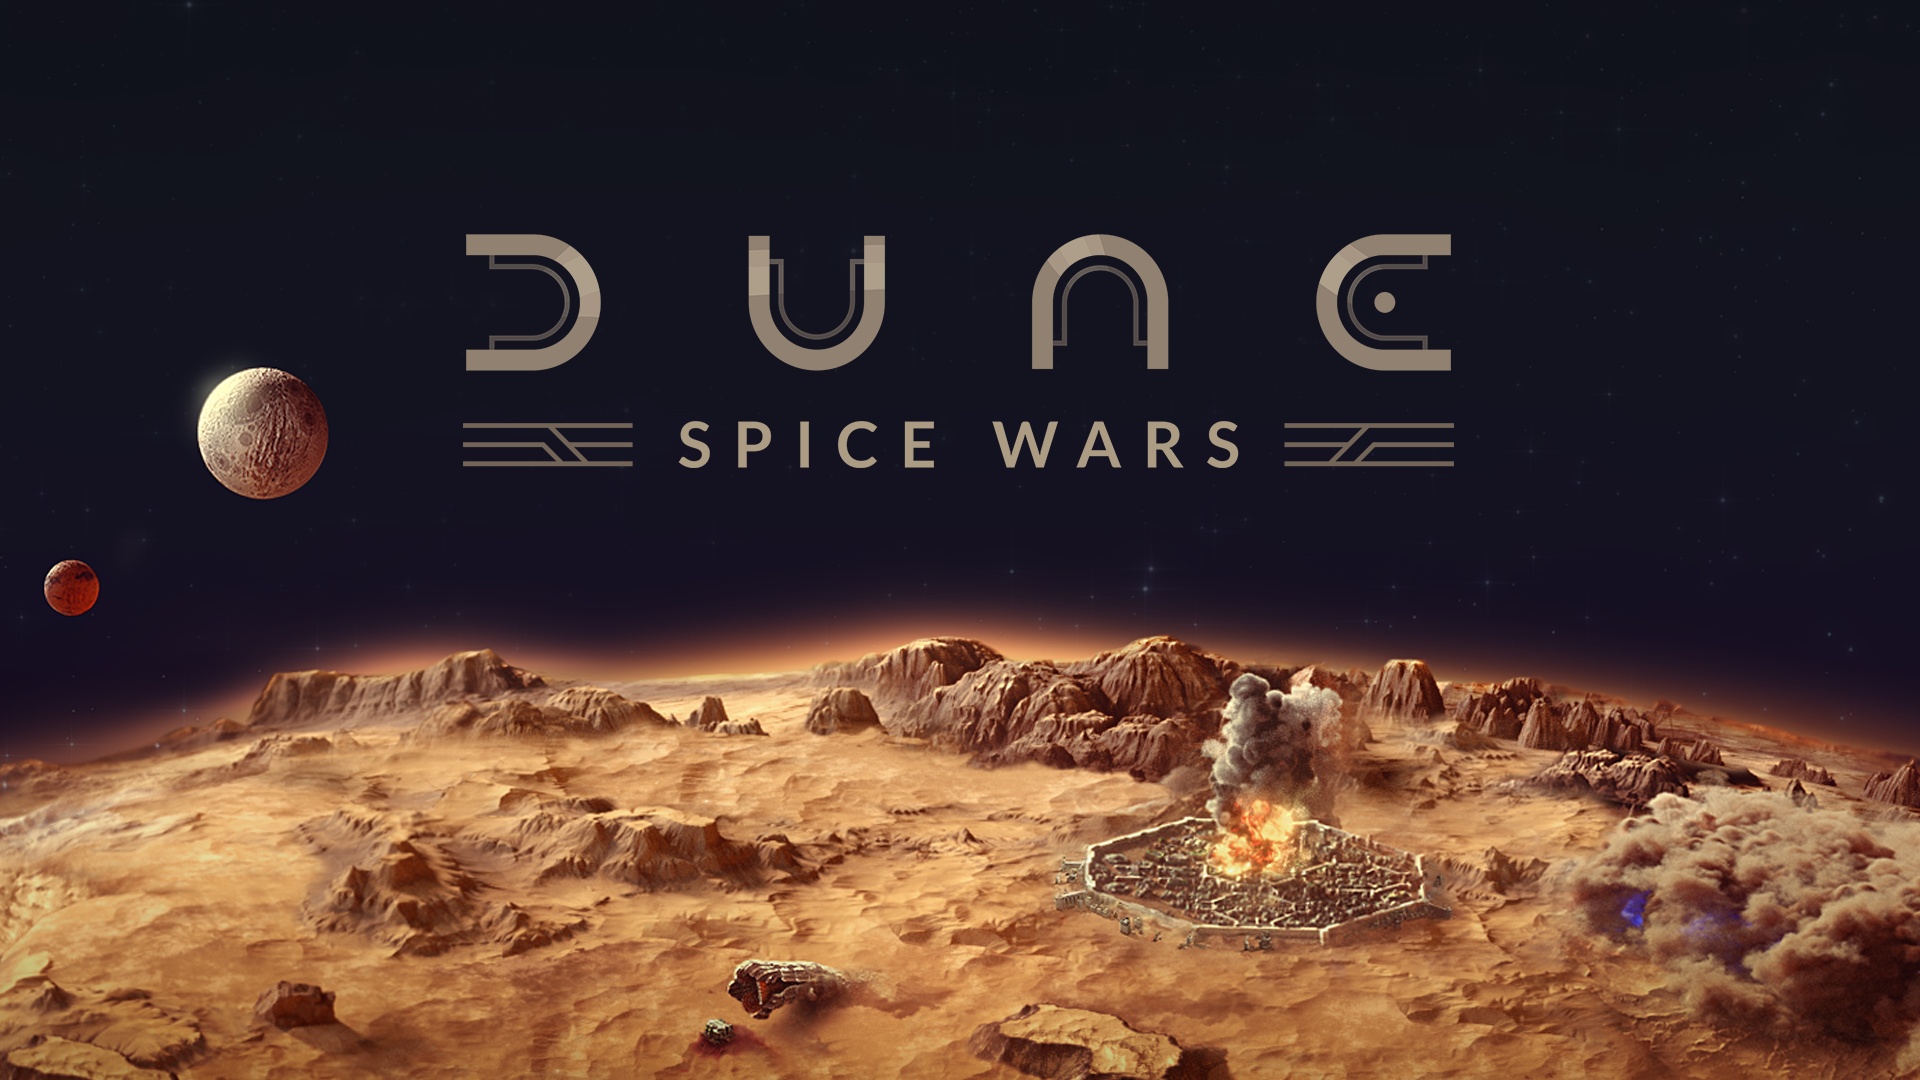 Bald im Xbox Game Pass: Warhammer 40,000: Darktide, Dune: Spice Wars und mehr: Dune Spice Wars